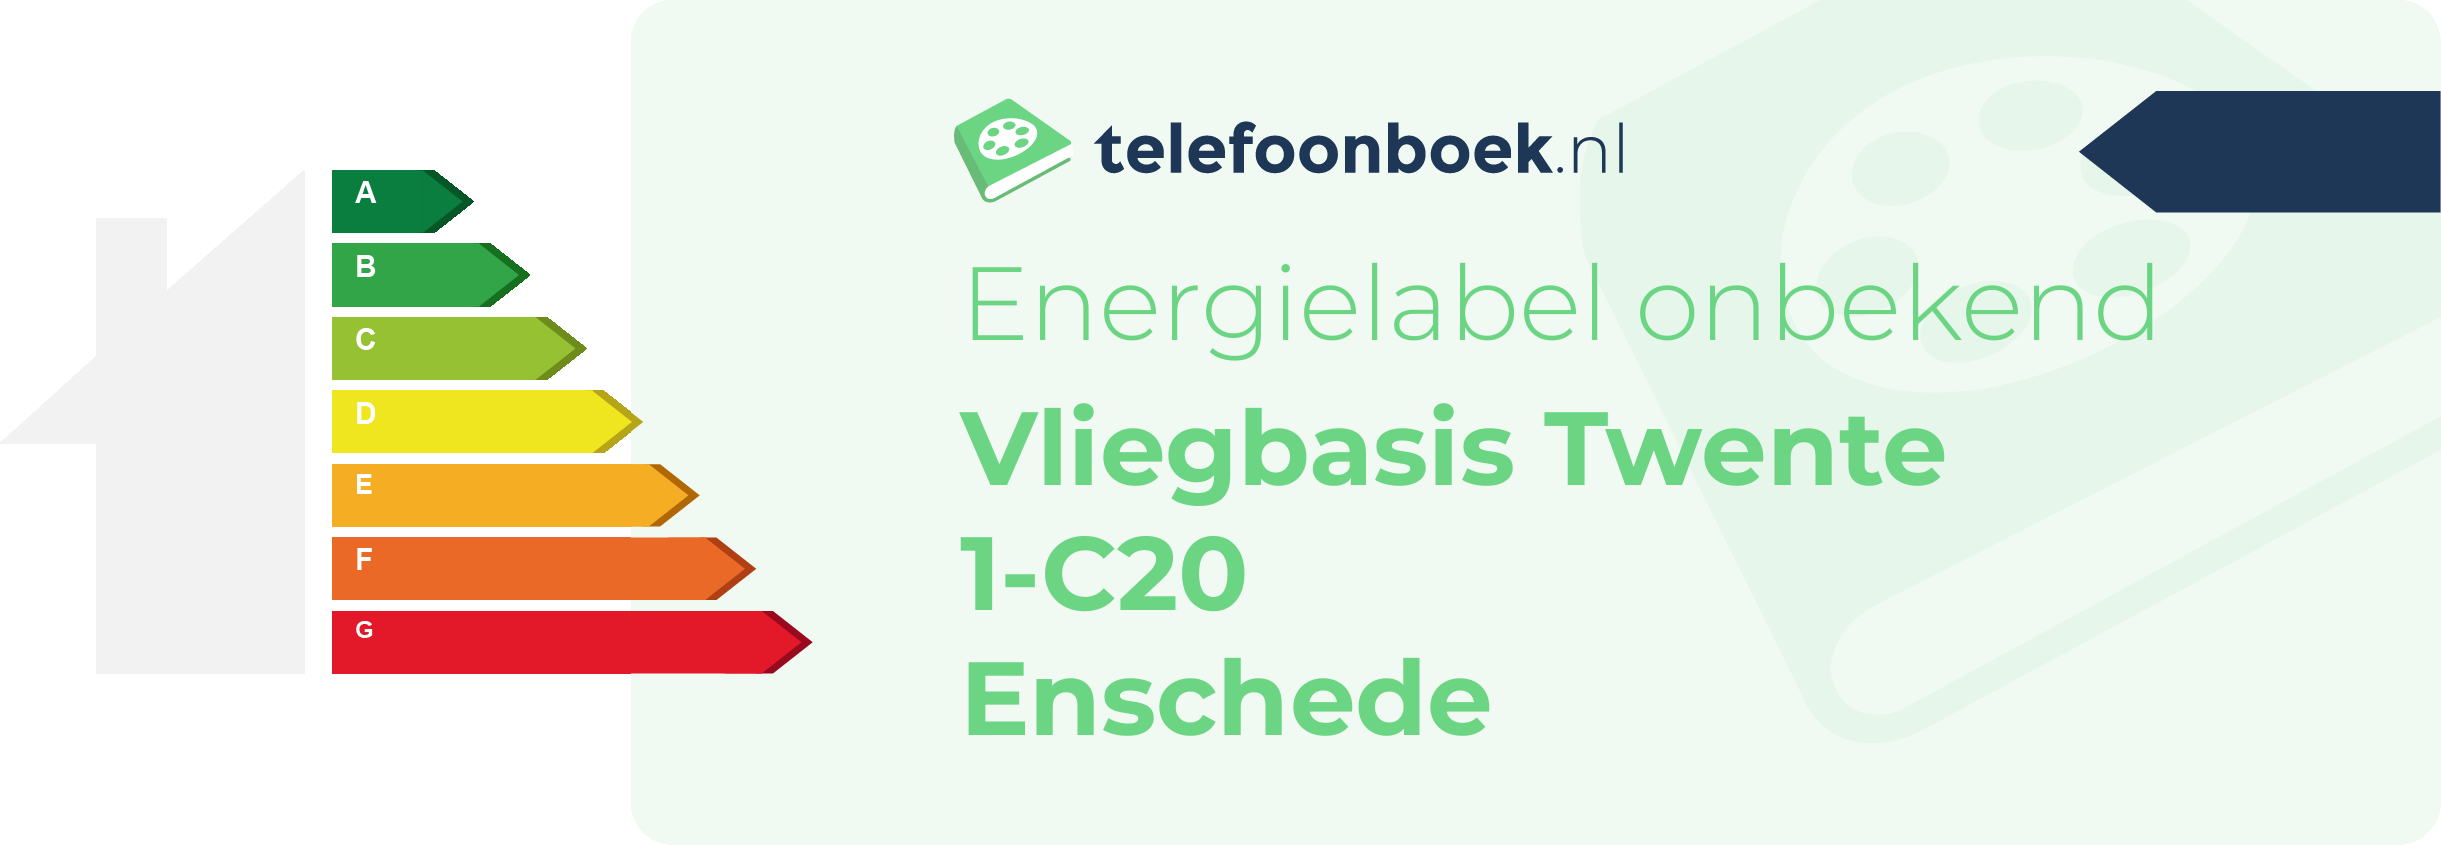 Energielabel Vliegbasis Twente 1-C20 Enschede